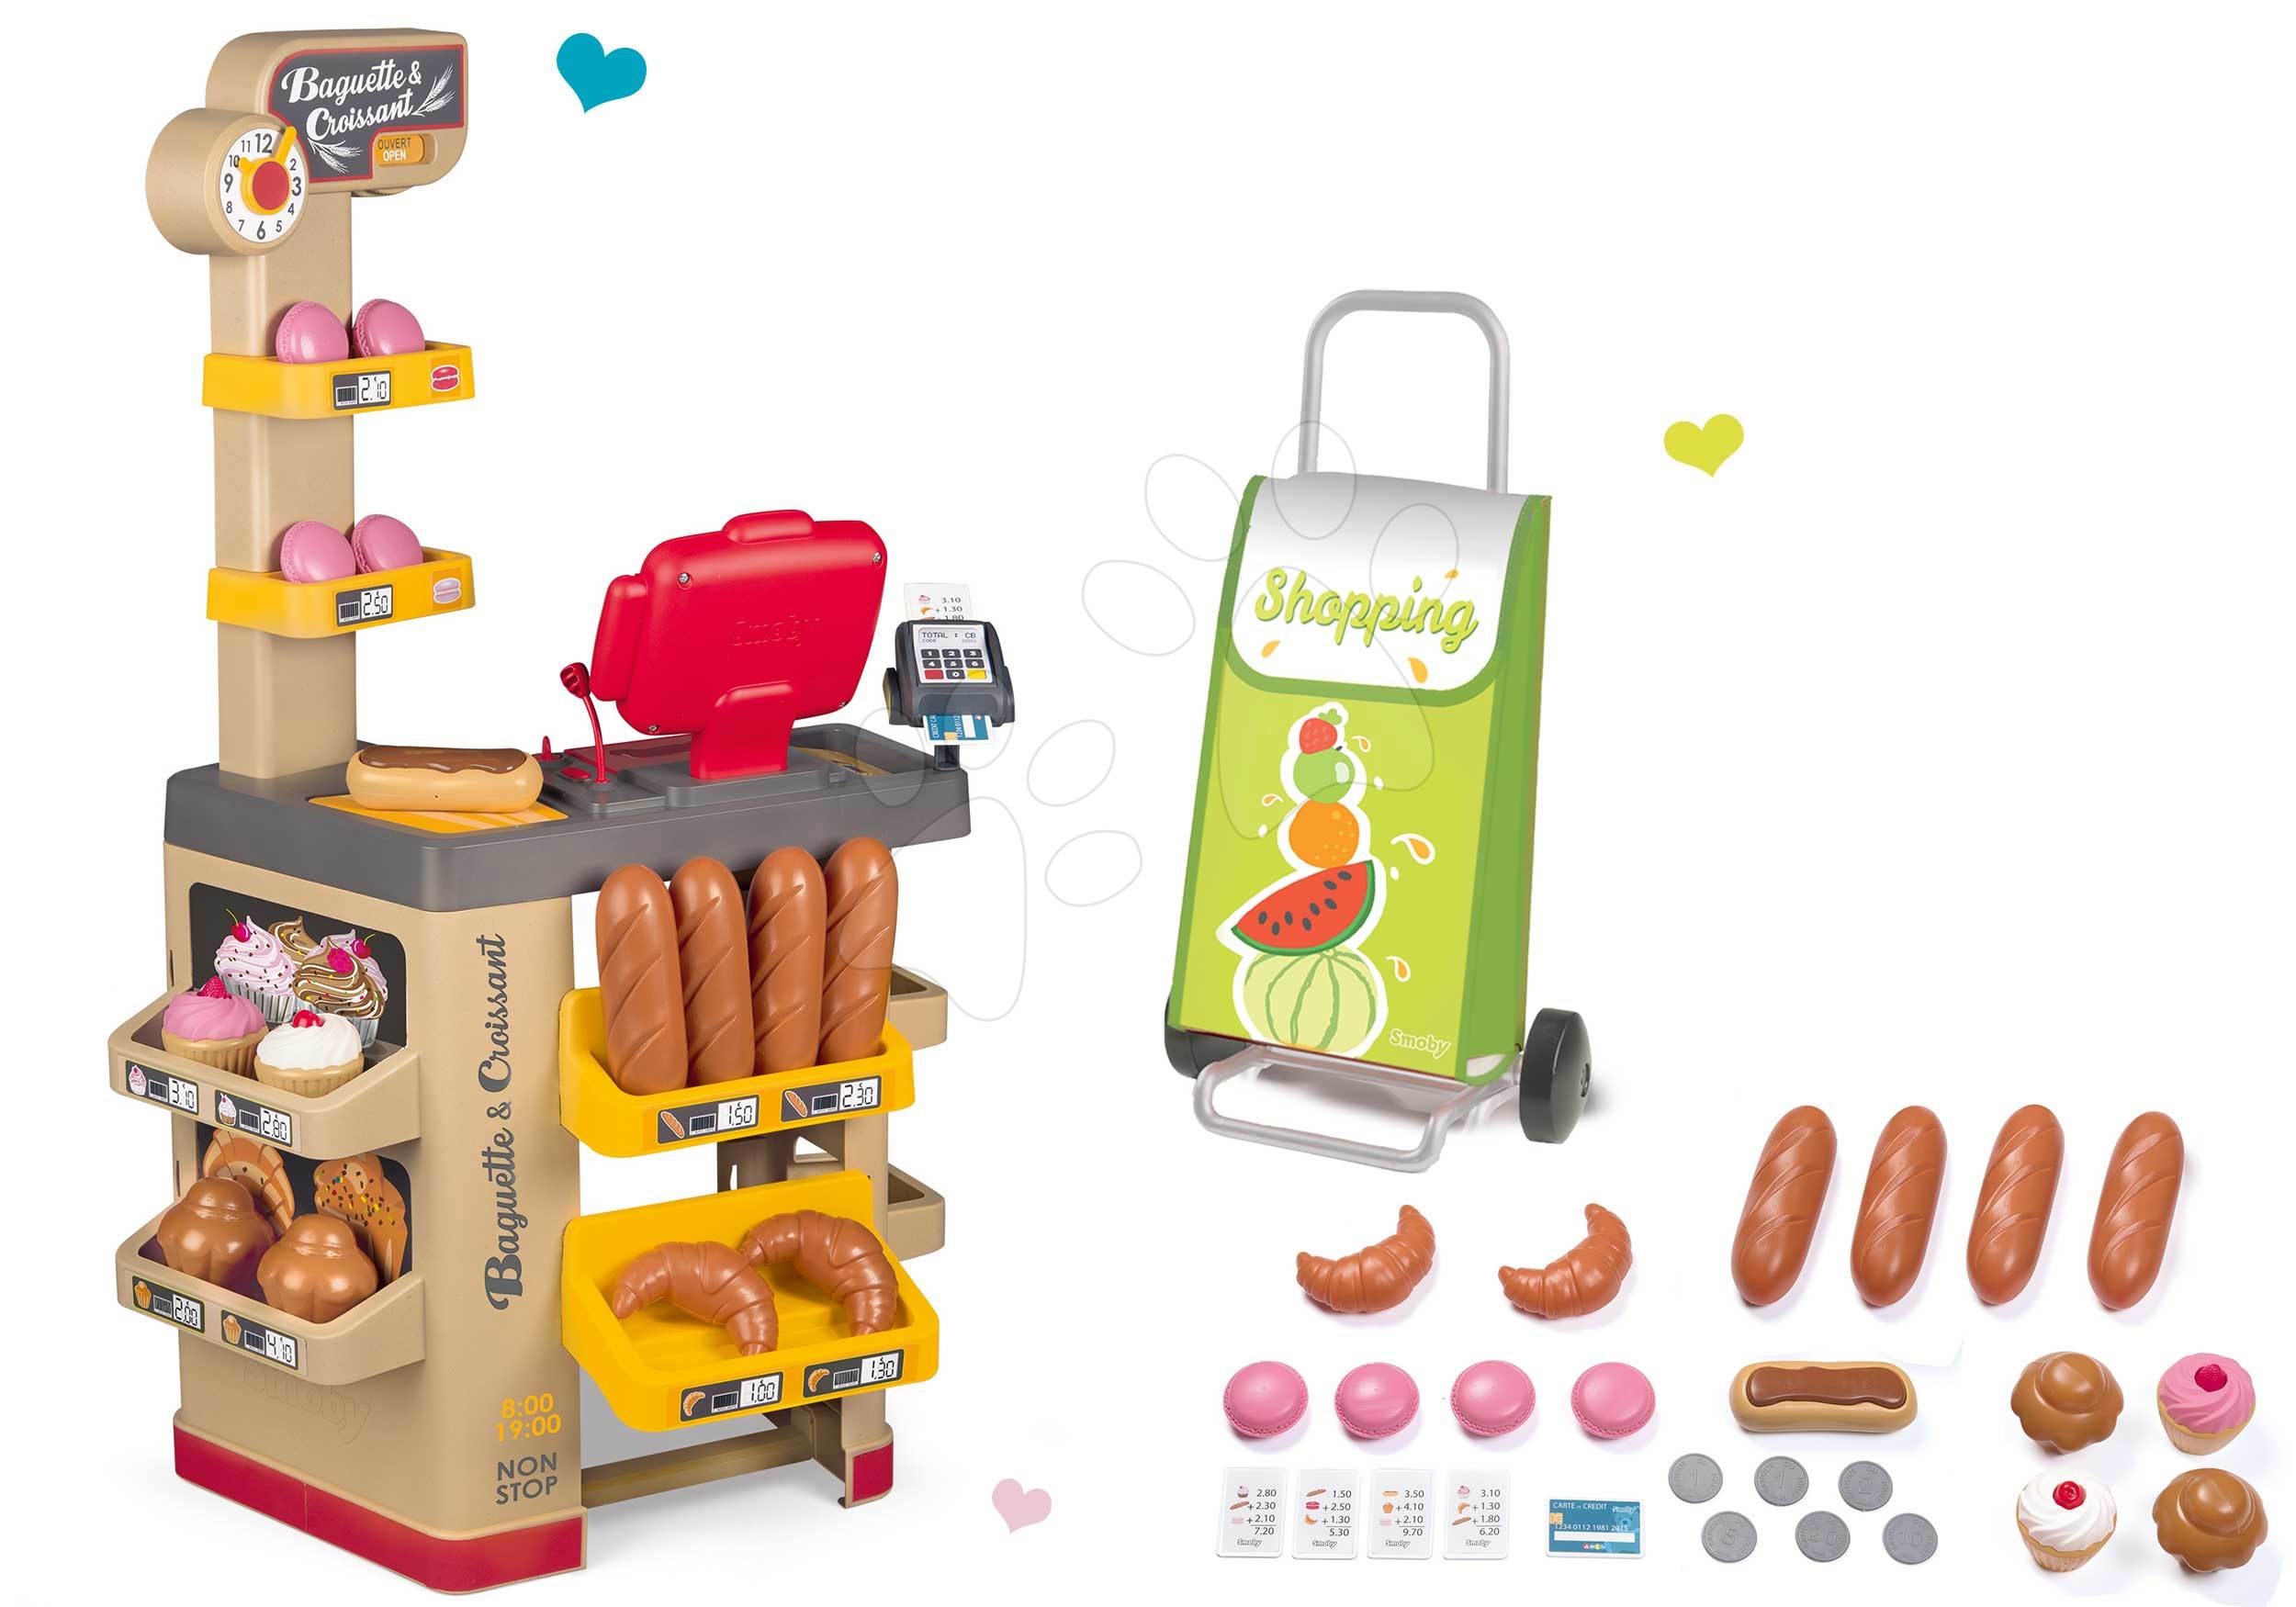 Obchody pre deti - Set pekáreň s koláčmi Baguette&Croissant Bakery Smoby s elektronickou pokladňou a nákupný vozík na kolieskach